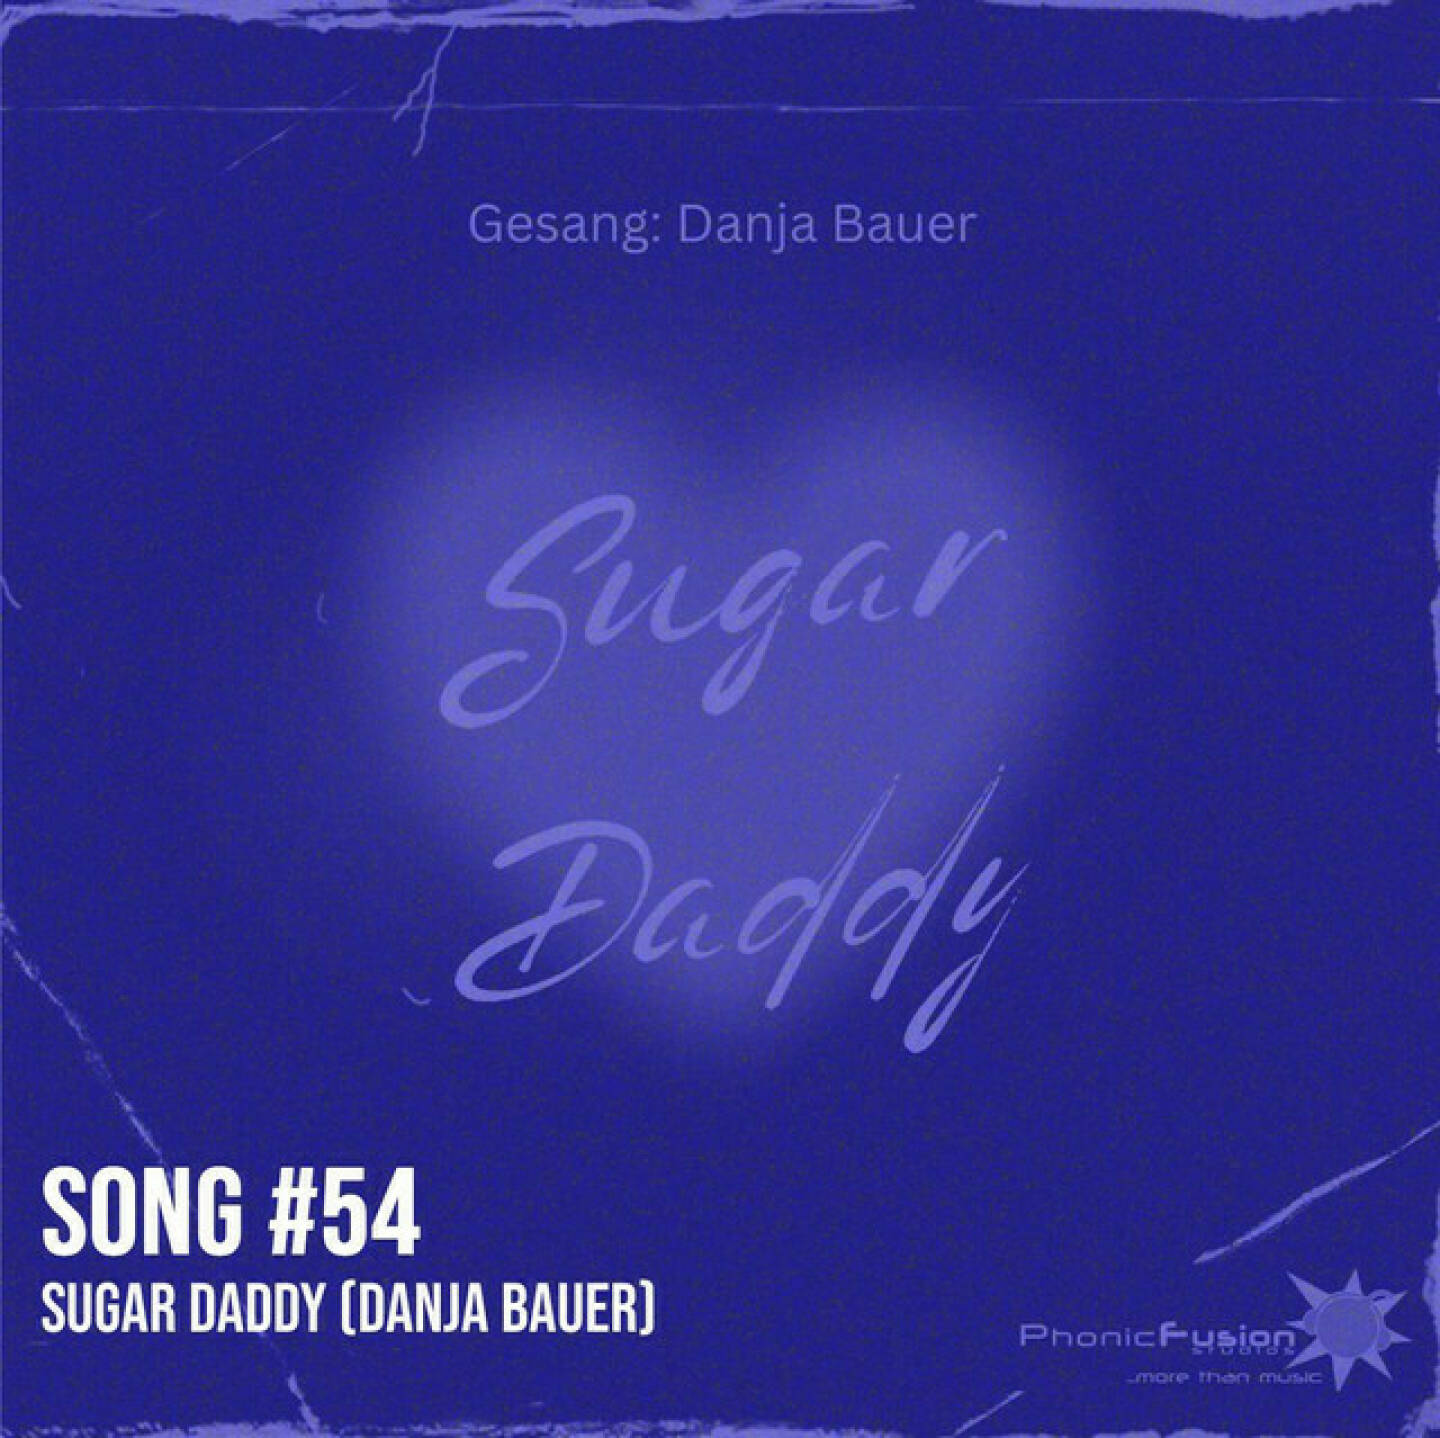 https://open.spotify.com/episode/121pNlVYGtU0Wbd1MtN4eI
Song #54: Sugar Daddy (Danja Bauer) - <p>Sugar Daddy  ist gesungen von Danja Bauer, die in der Börsepeople-Folge S13/05, Ausstrahlung am 7. Juni 2024, zu Gast ist. Danja ist Sängerin  Sprecherin, Moderatorin und hat auch im Kapitalmarkt gearbeitet. Ein Showcase für ihre Stimme ist auch dieser tolle Song eines Komponisten, der Danja als Sängerin geholt hat.<br/><br/>Weiterer Song von Danja: The Silence of the Sea: <a href=https://audio-cd.at/page/podcast/5821 target=_blank>https://audio-cd.at/page/podcast/5821</a><br/><br/><a href=http://www.danjabauer.com target=_blank>http://www.danjabauer.com</a><br/><br/>- mehr Songs: <a href=https://www.audio-cd.at/songs target=_blank>https://www.audio-cd.at/songs</a><br/><br/>- Playlist mit ein paar unserer Songs: <a href=https://open.spotify.com/playlist/63tRnVh3aIOlhrdUKvb4P target=_blank>https://open.spotify.com/playlist/63tRnVh3aIOlhrdUKvb4P</a><br/><br/>Bewertungen bei Apple (oder auch Spotify) machen mir Freude: <a href=http://www.audio-cd.at/apple target=_blank>http://www.audio-cd.at/apple</a> <a href=http://www.audio-cd.at/spotify target=_blank>http://www.audio-cd.at/spotify</a></p>